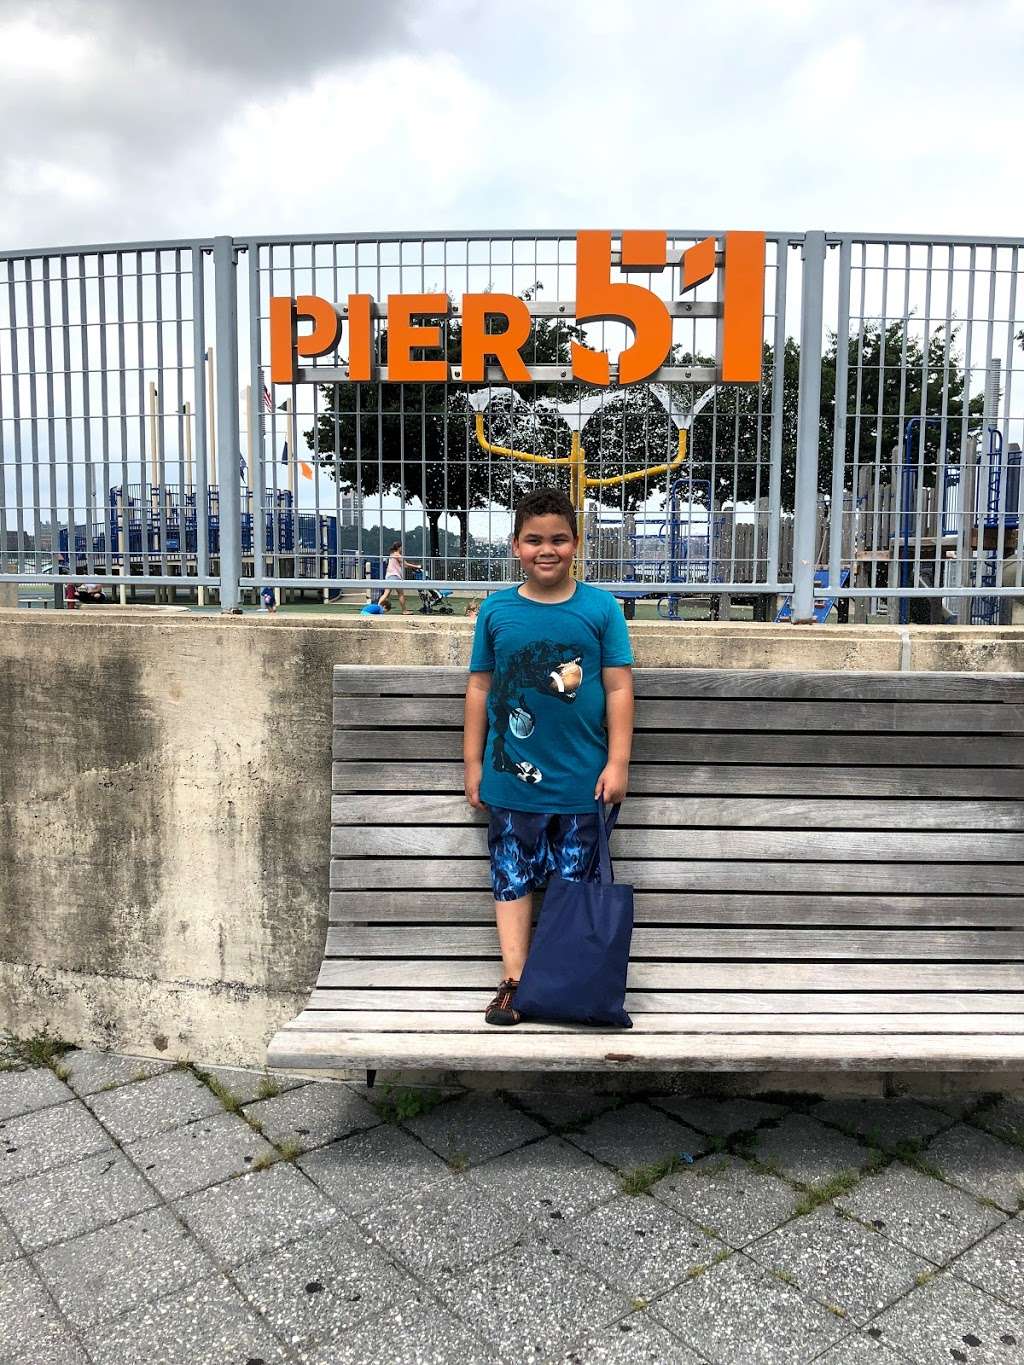 Pier 51 | New York, NY 10014, USA